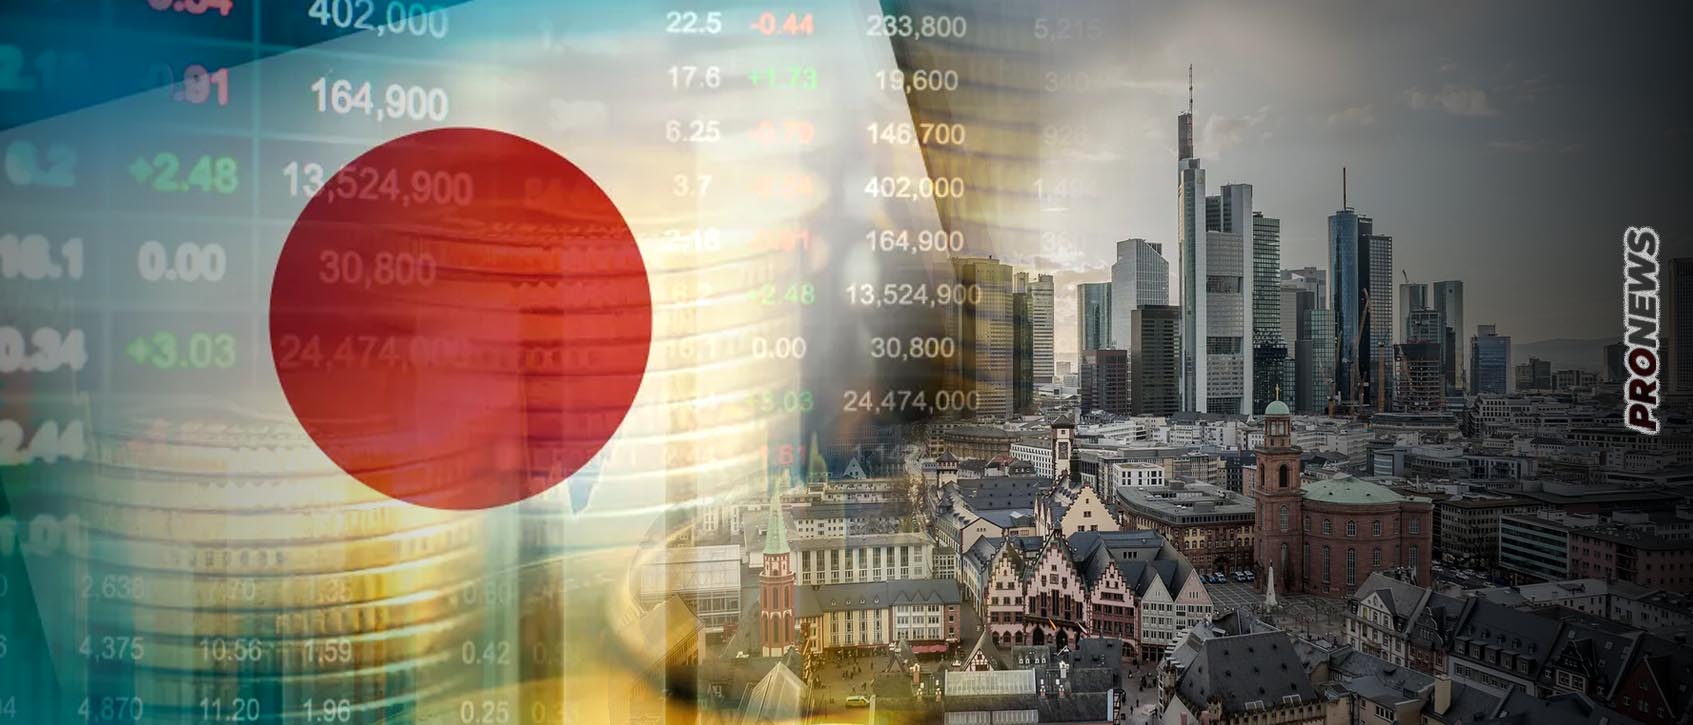 Έχασε τη θέση για την 3η μεγαλύτερη οικονομία στον κόσμο η Ιαπωνία